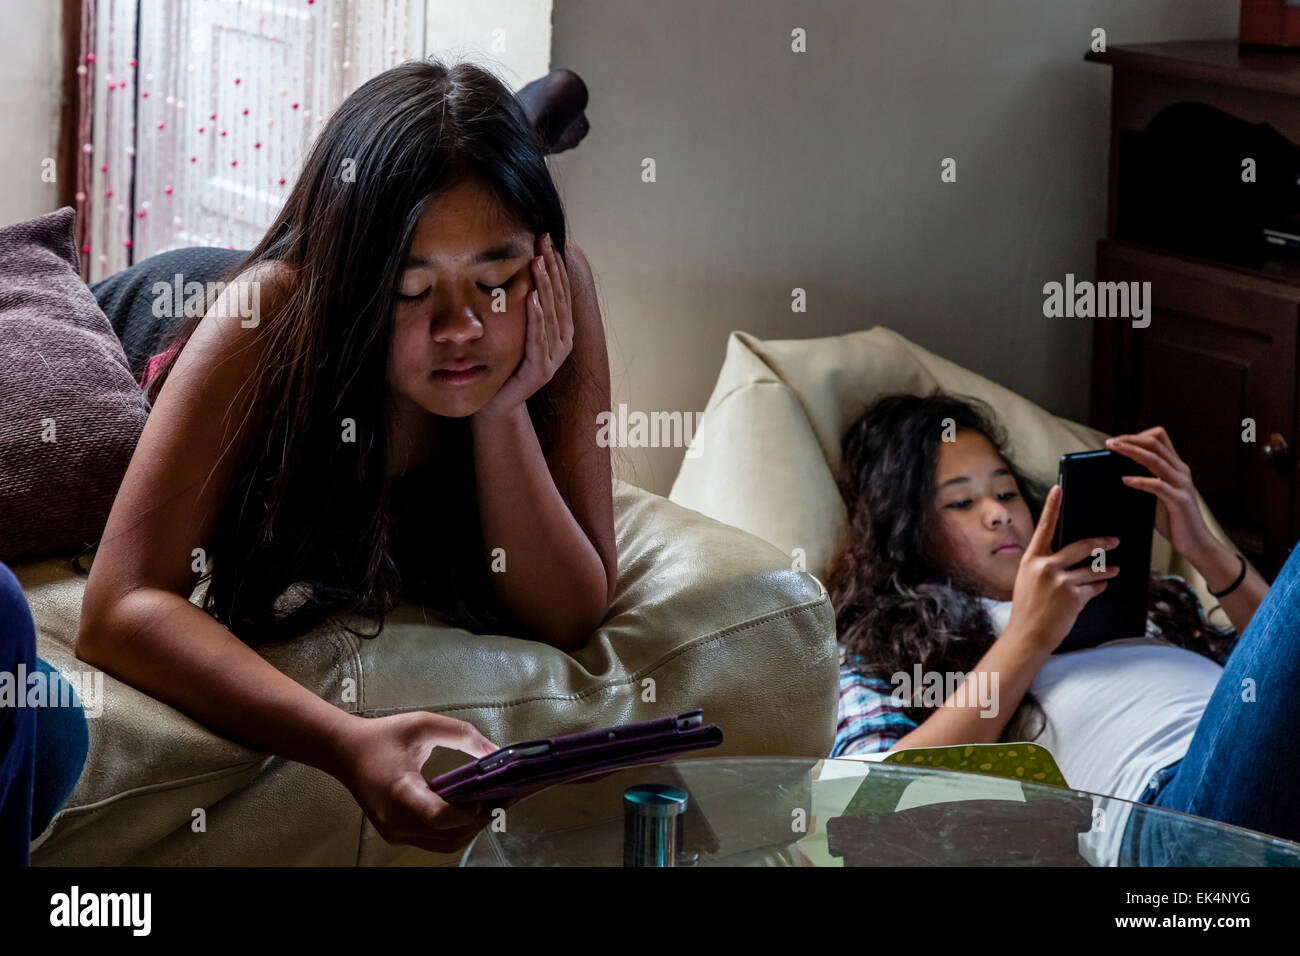 Zwei Mädchen spielen auf Ihren Ipads/Tabletten, Sussex, UK Stockfoto